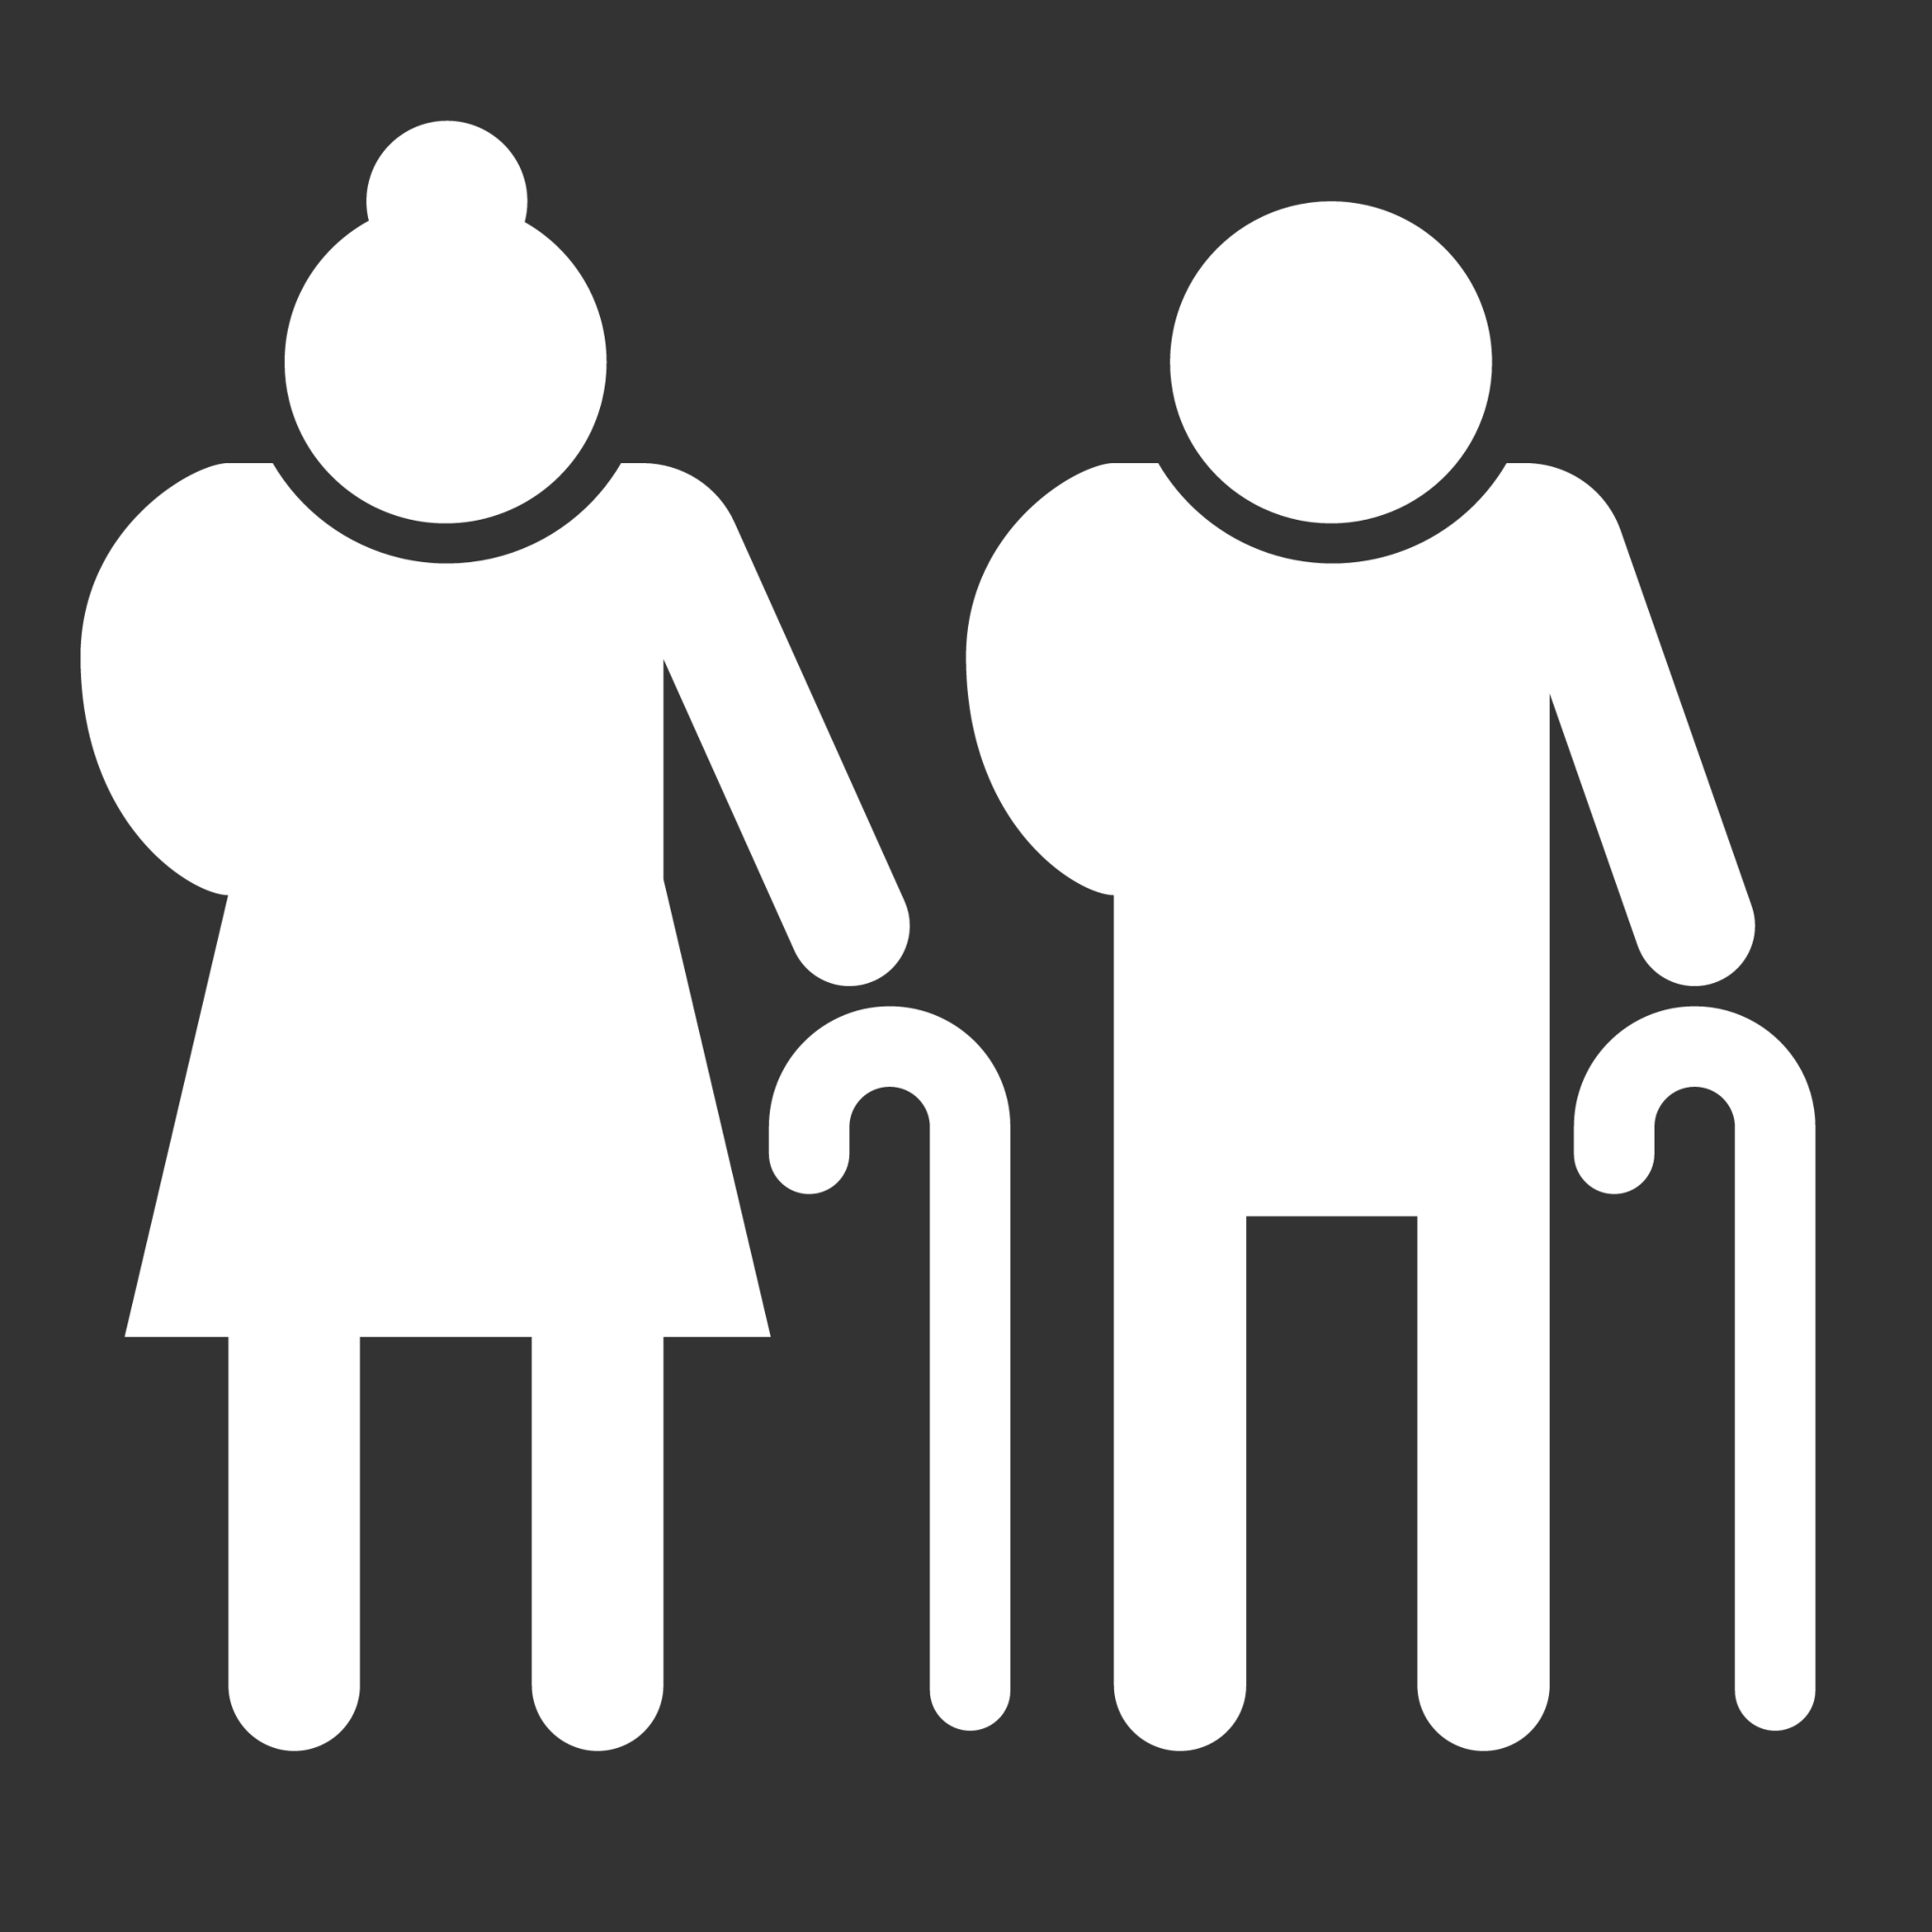 Elderly People icon